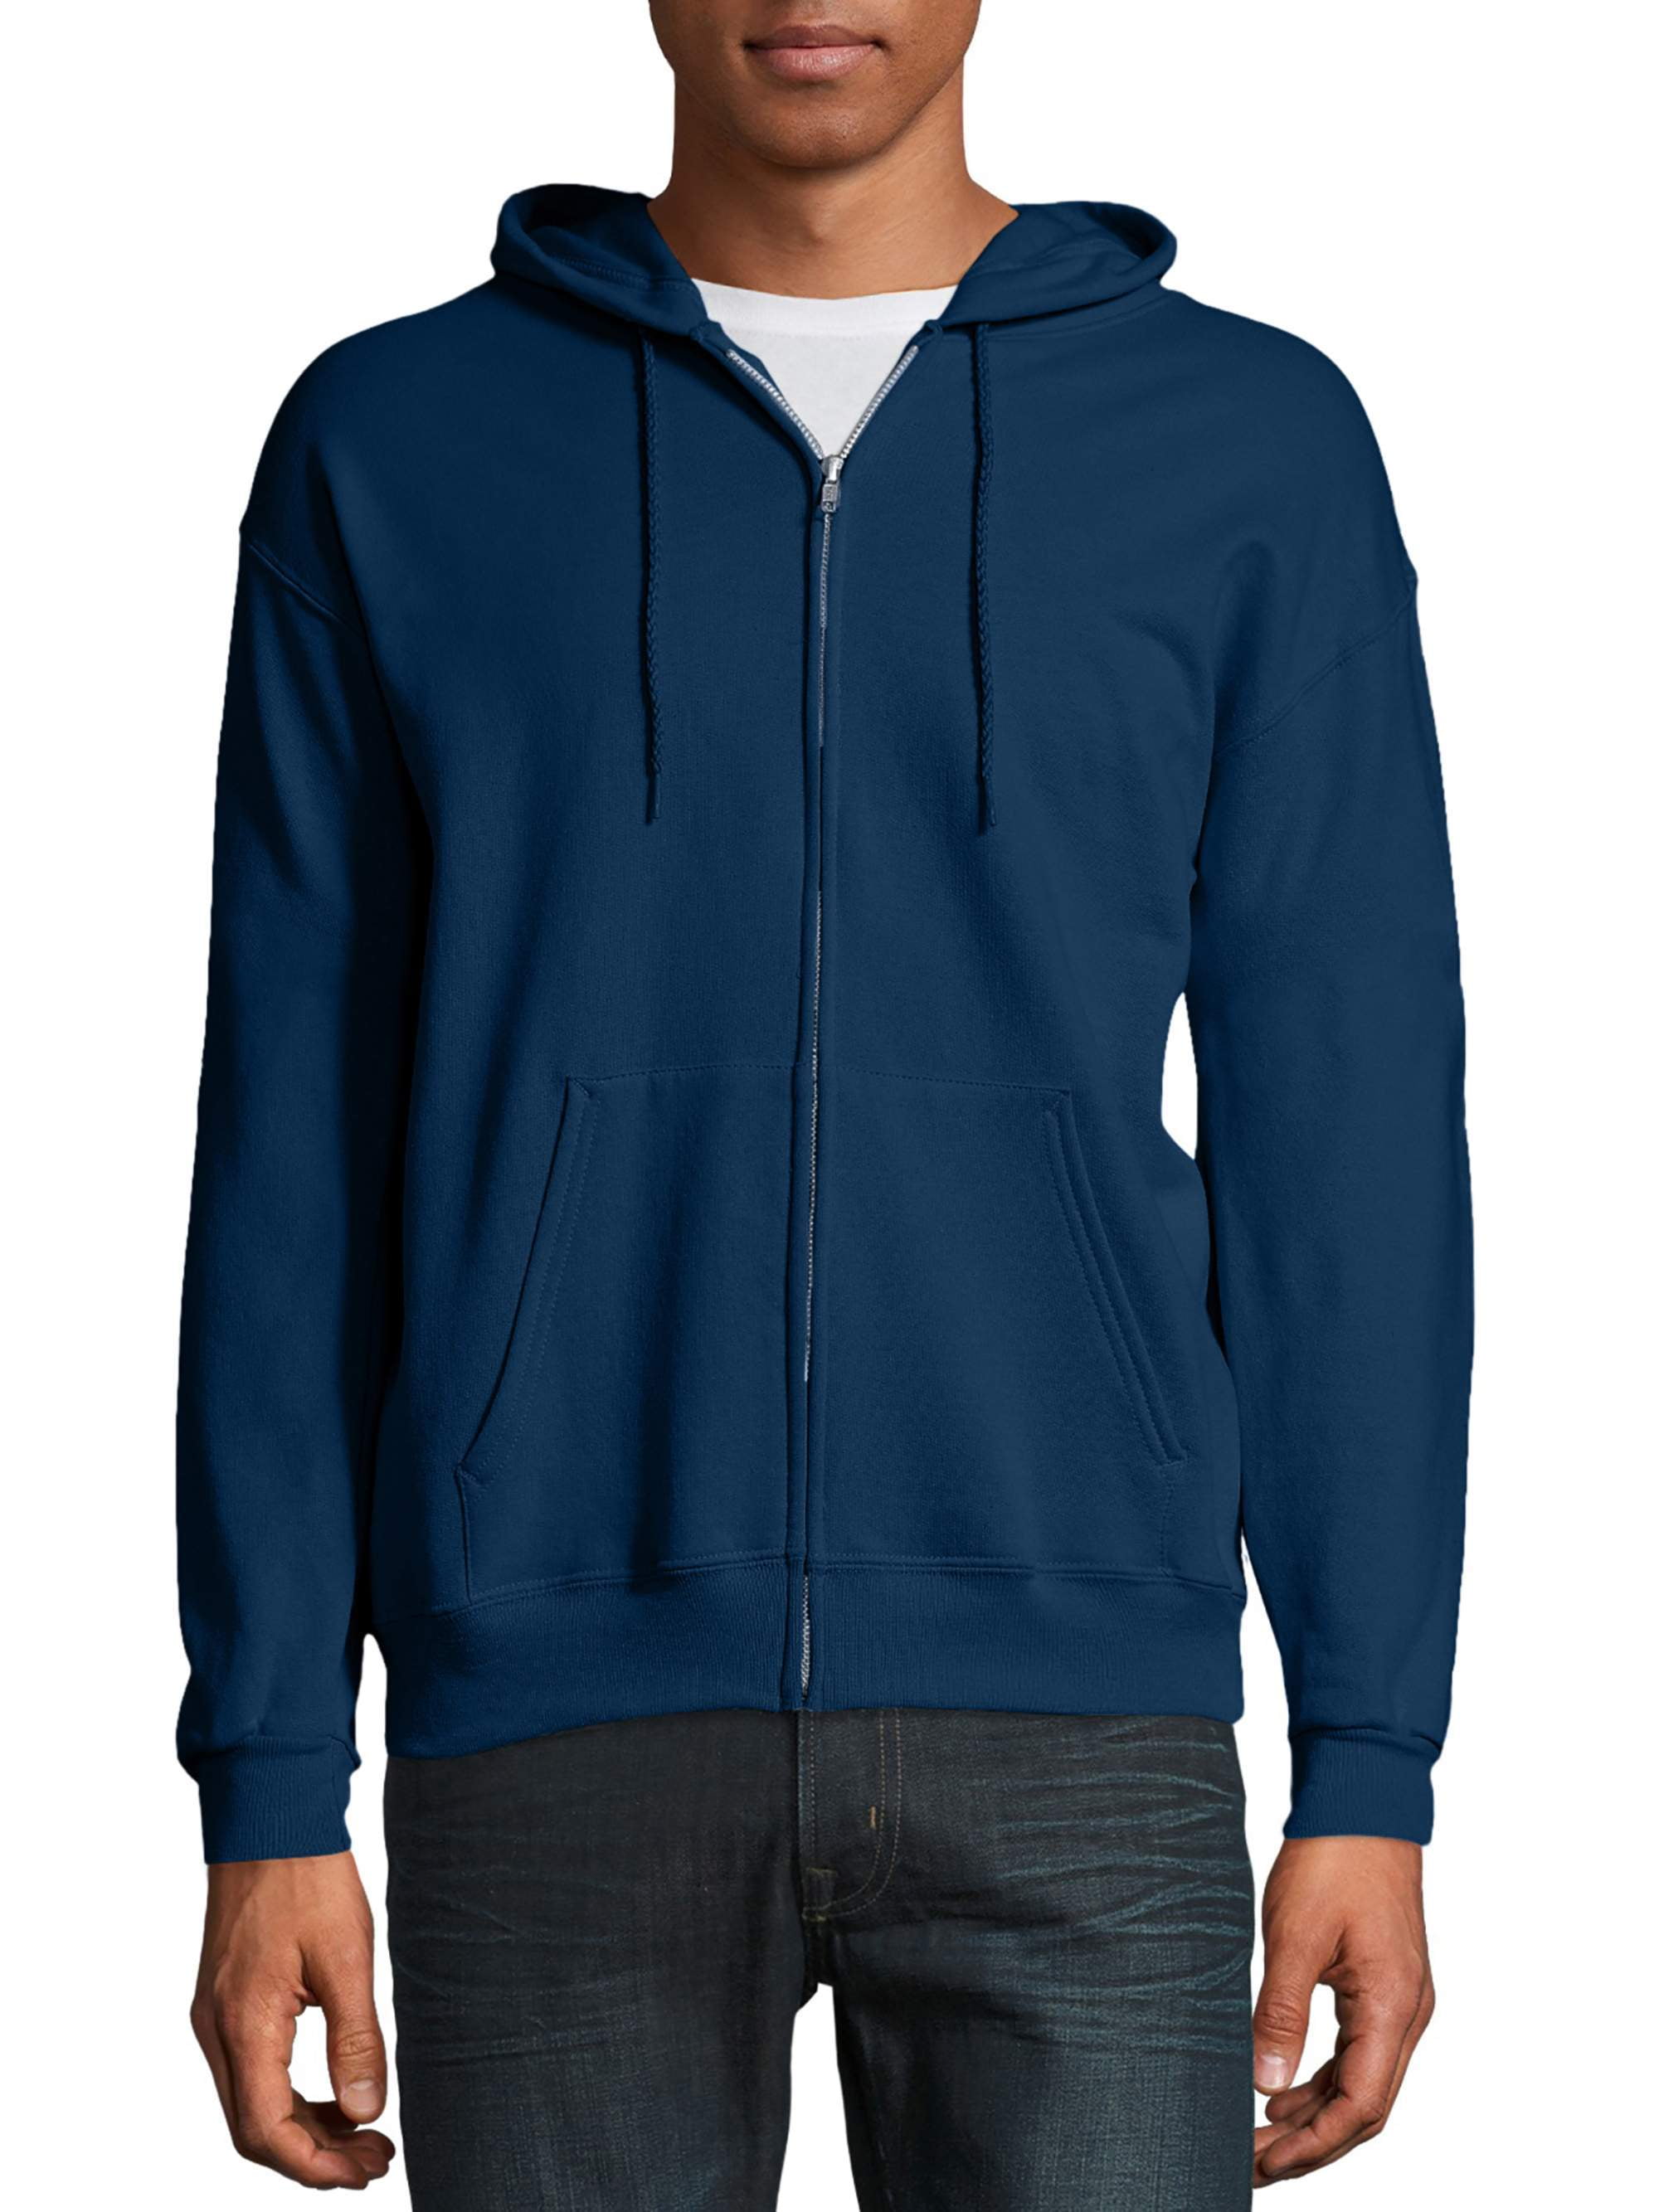 Hanes Men's and Big Men's Ecosmart Fleece Full Zip Hooded Jacket, up to ...